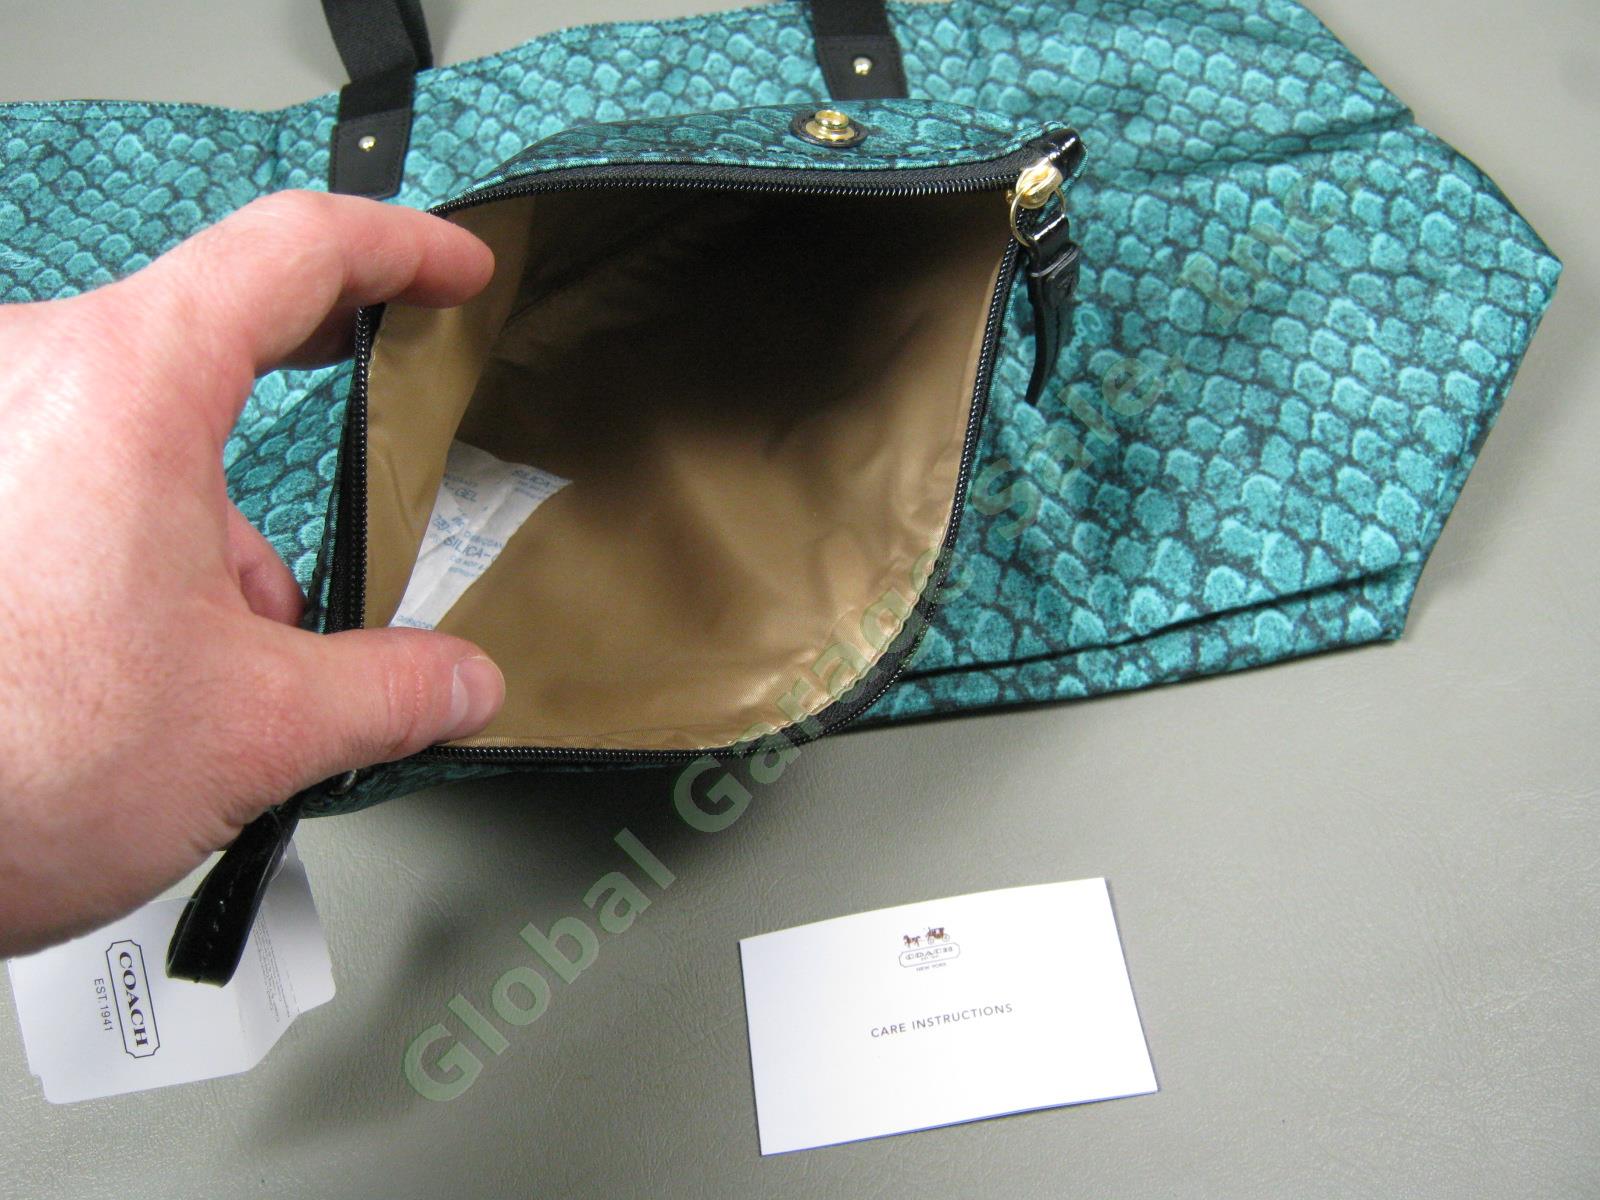 NWT Coach Emerald Getaway Snake Print Weekender Packable Travel Tote Bag $148 NR 3